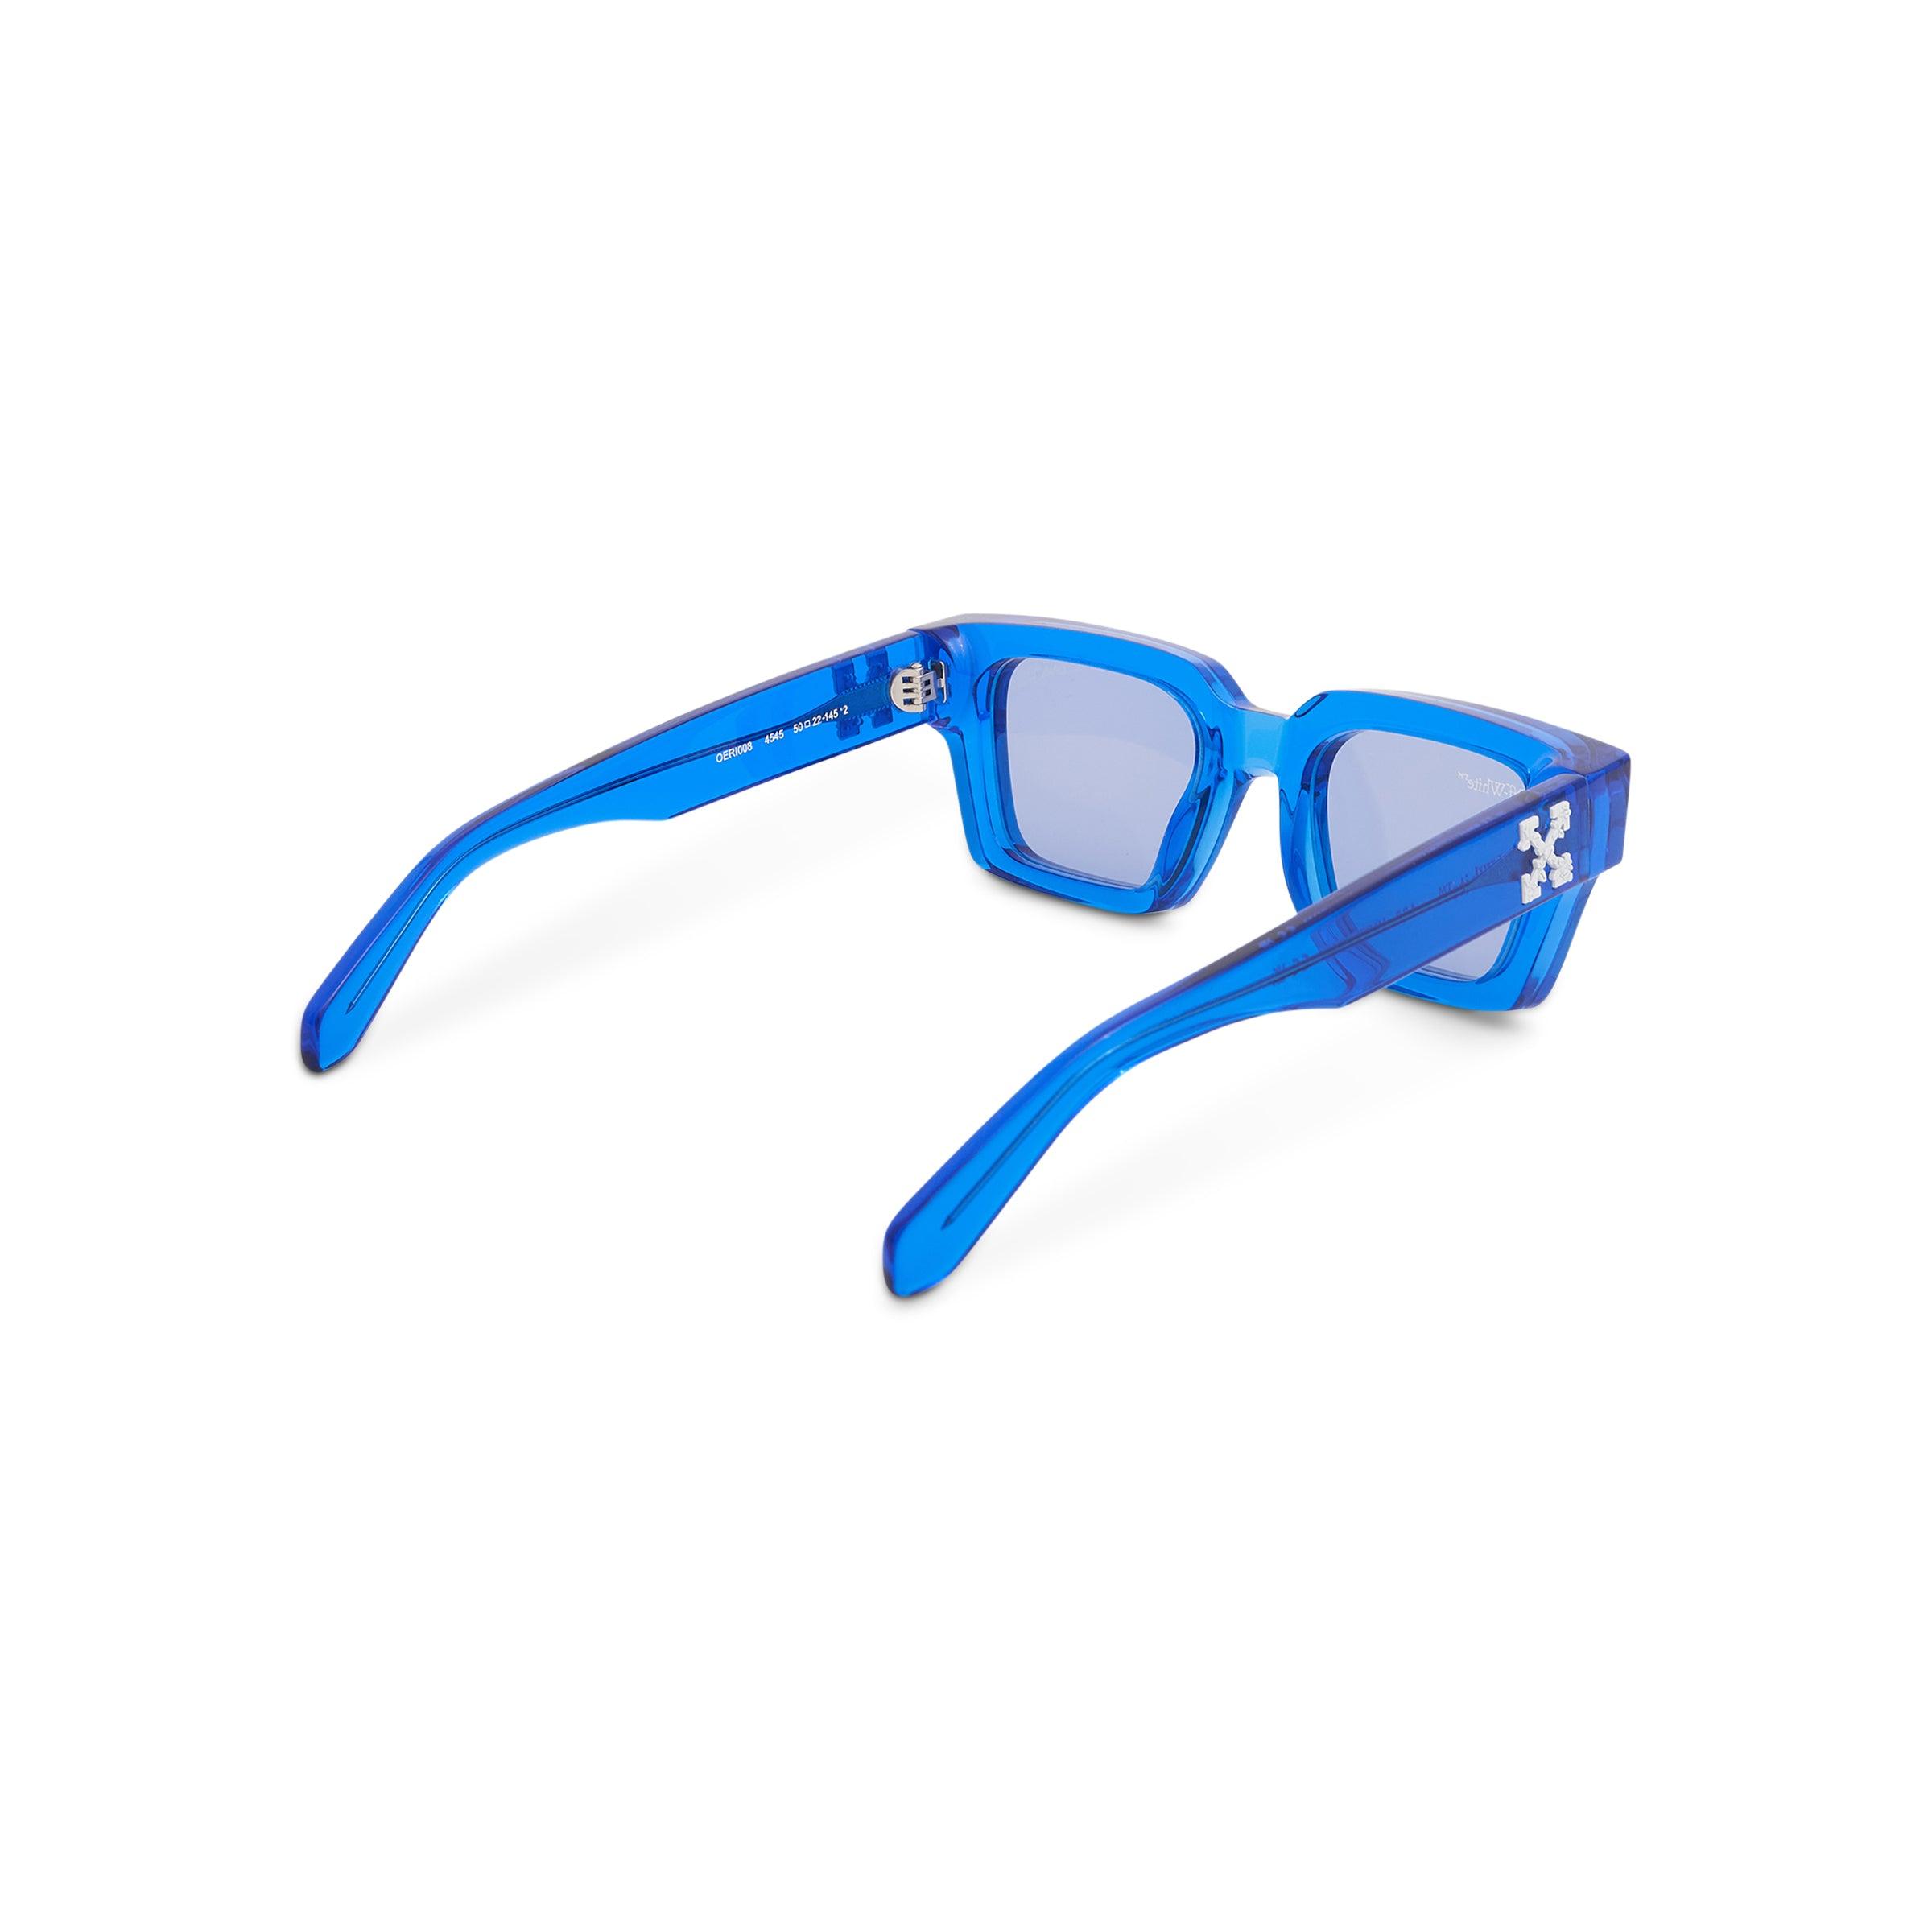 Off-White c/o Virgil Abloh Virgil Sunglasses In Crystal/blue